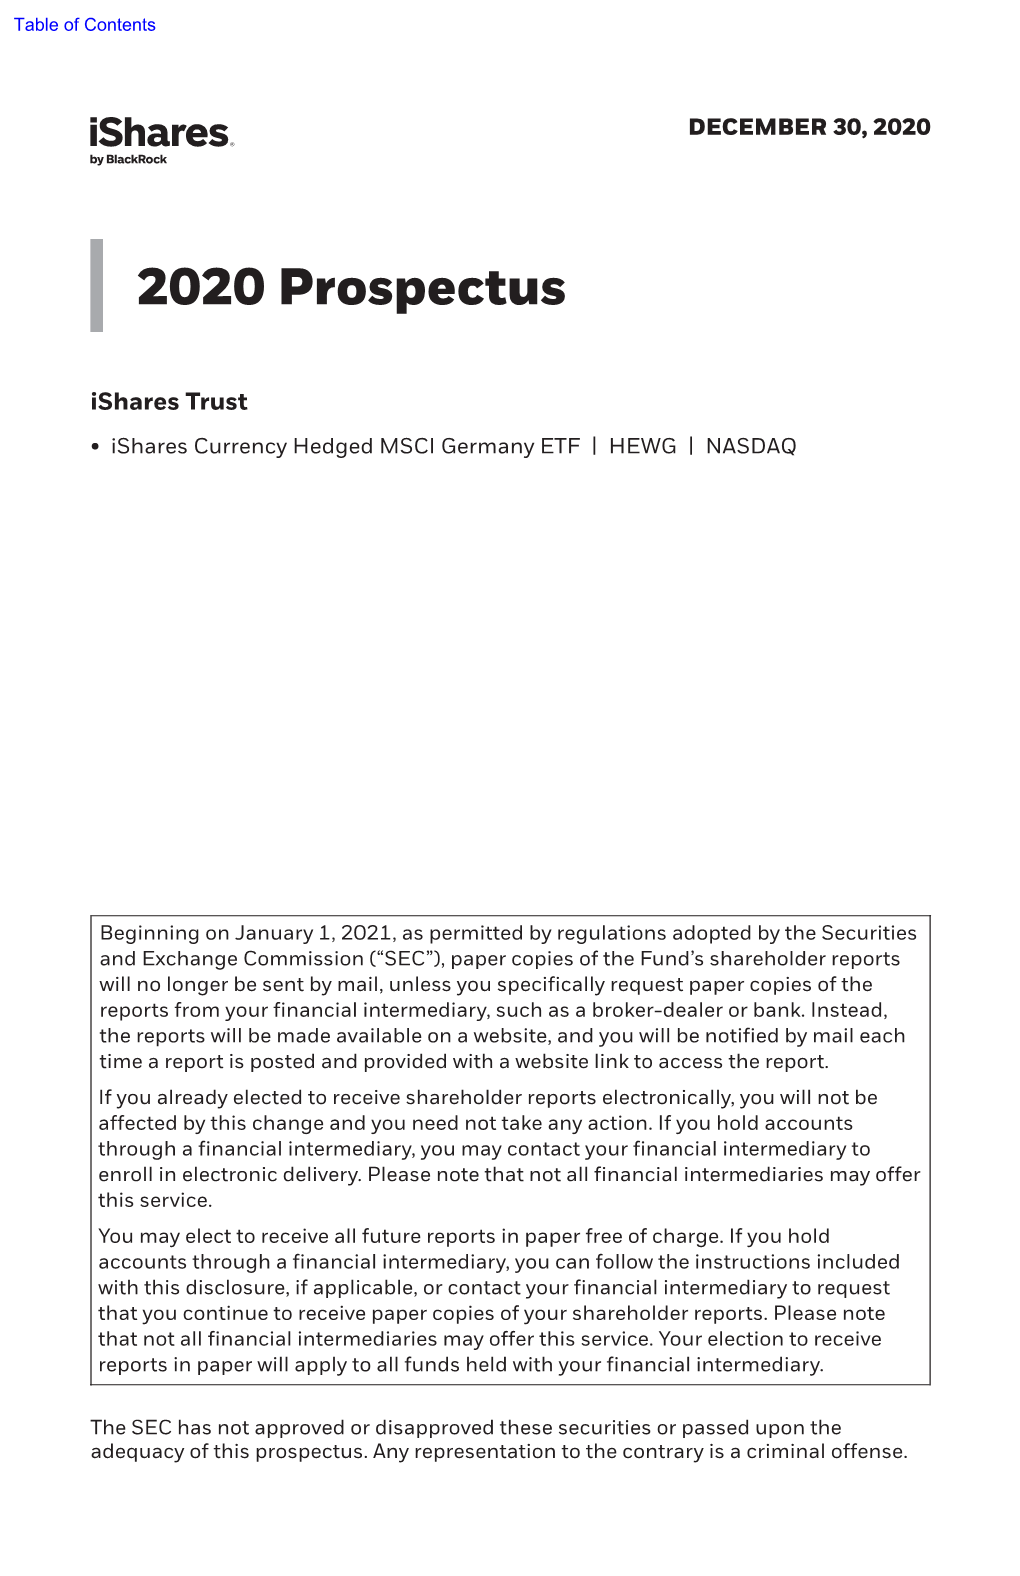 2020 Prospectus